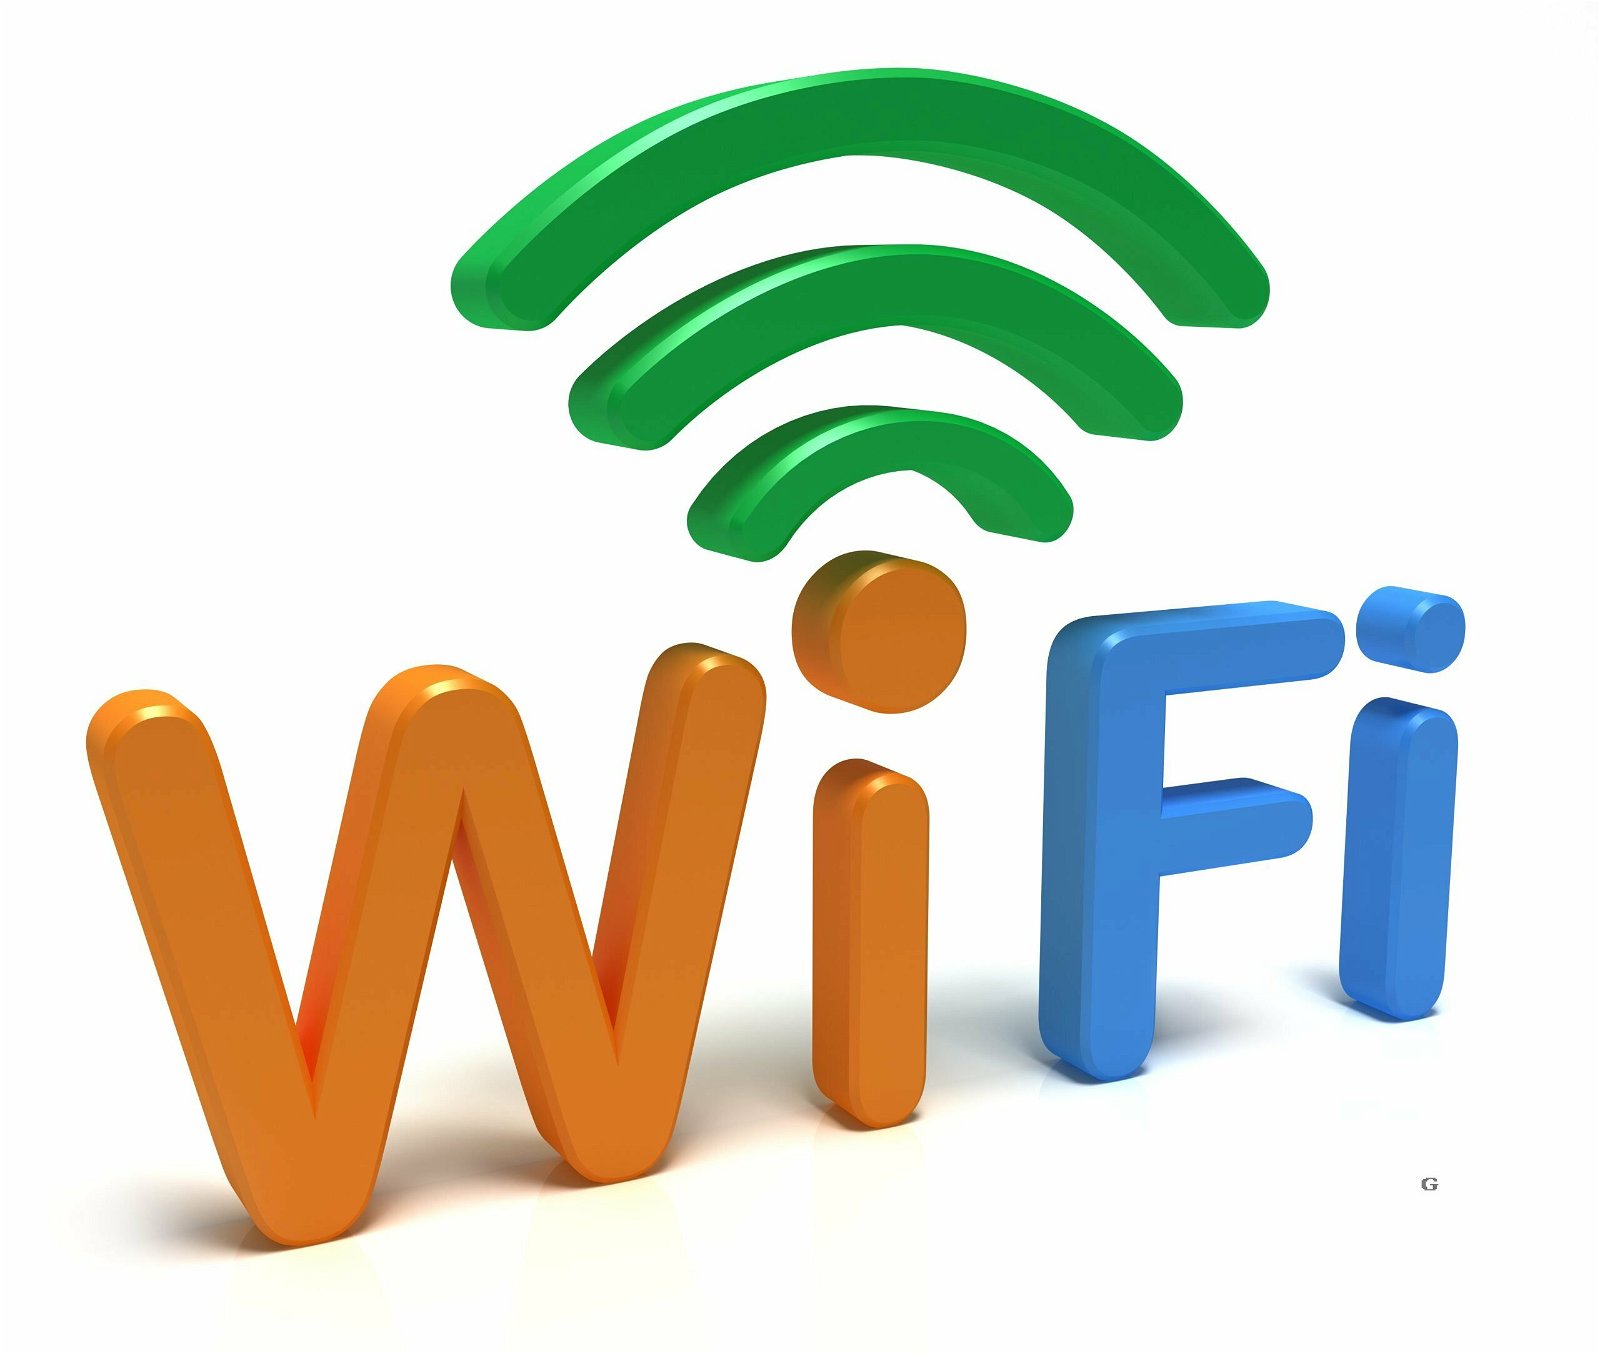 WiFi logo. 3D concept